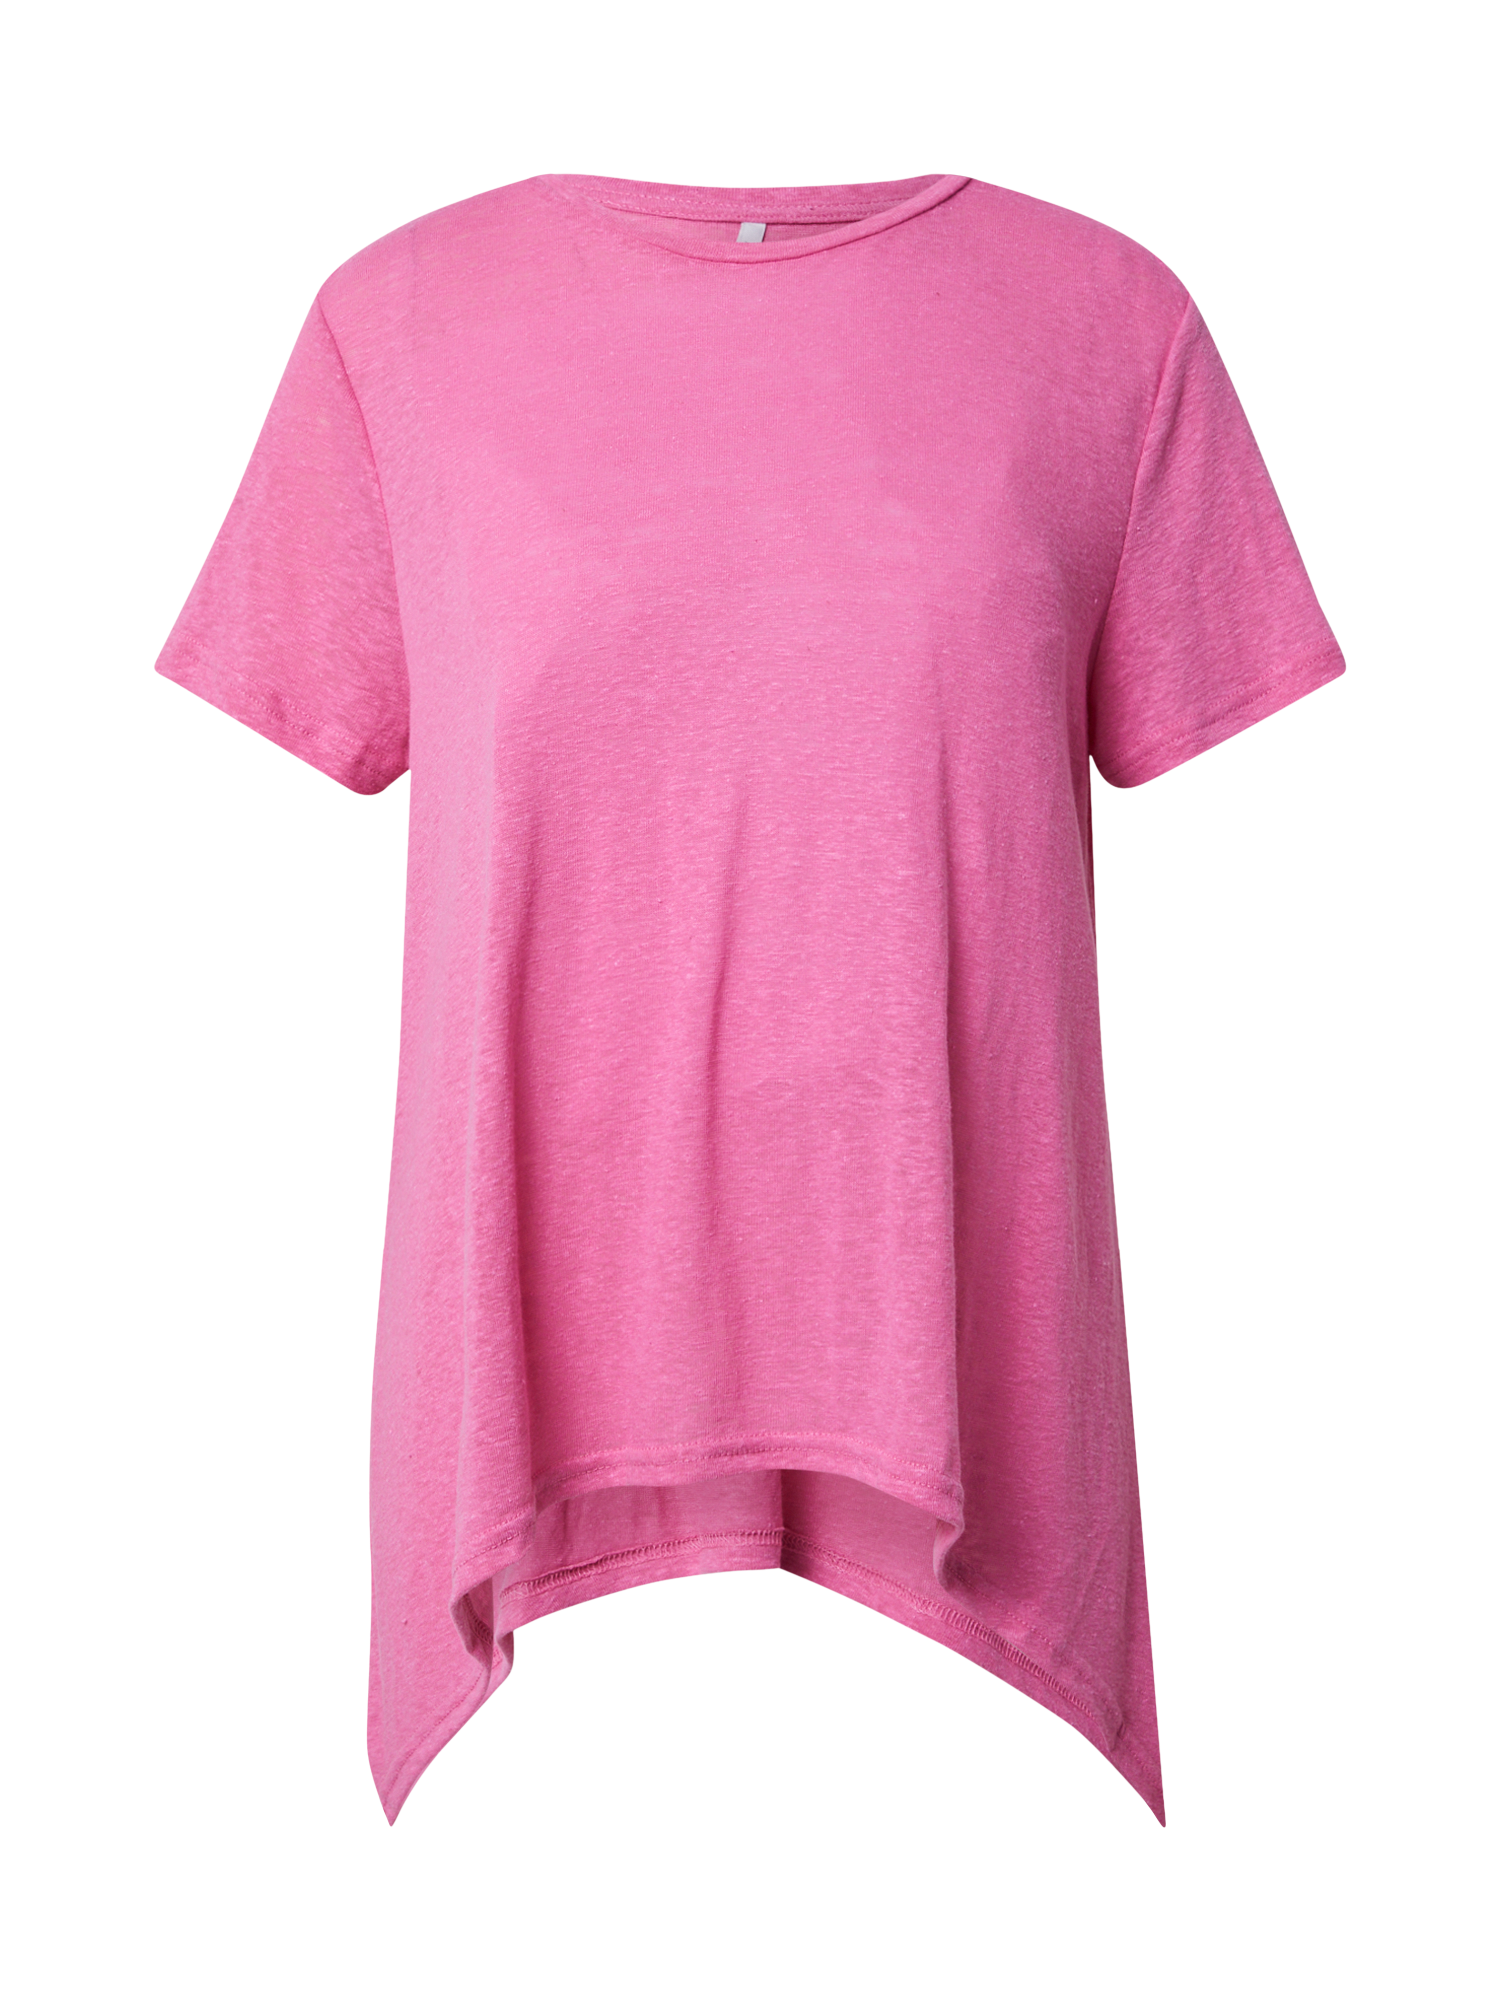 Odzież Koszulki & topy ONLY Koszulka TEA w kolorze Różowym 